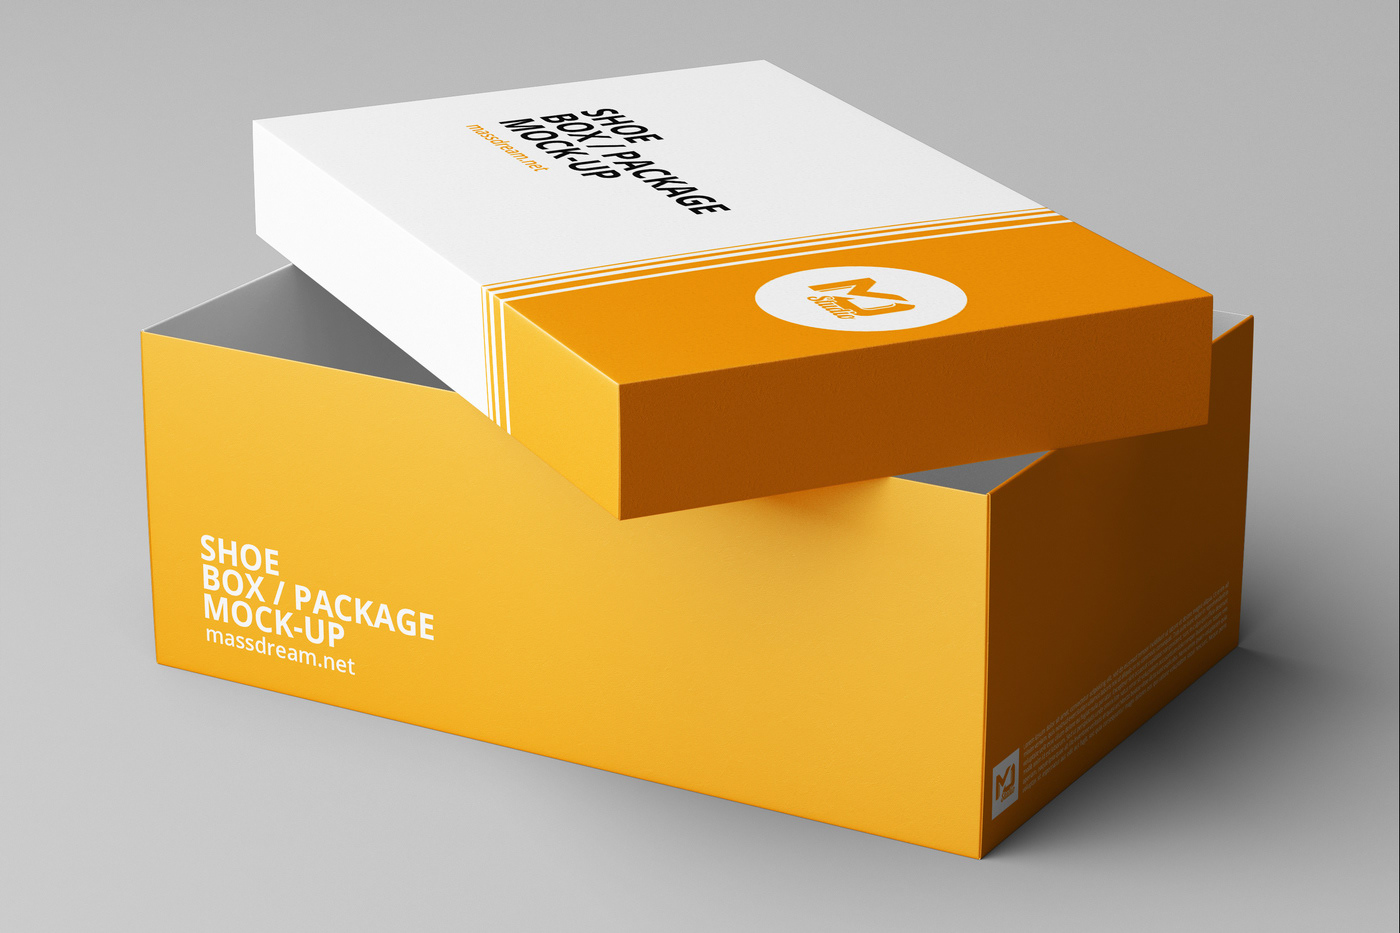 Box package. Коробка для обуви мокап. Коробка Design. Мокап коробки для упаковки. Packing Boxes Design.